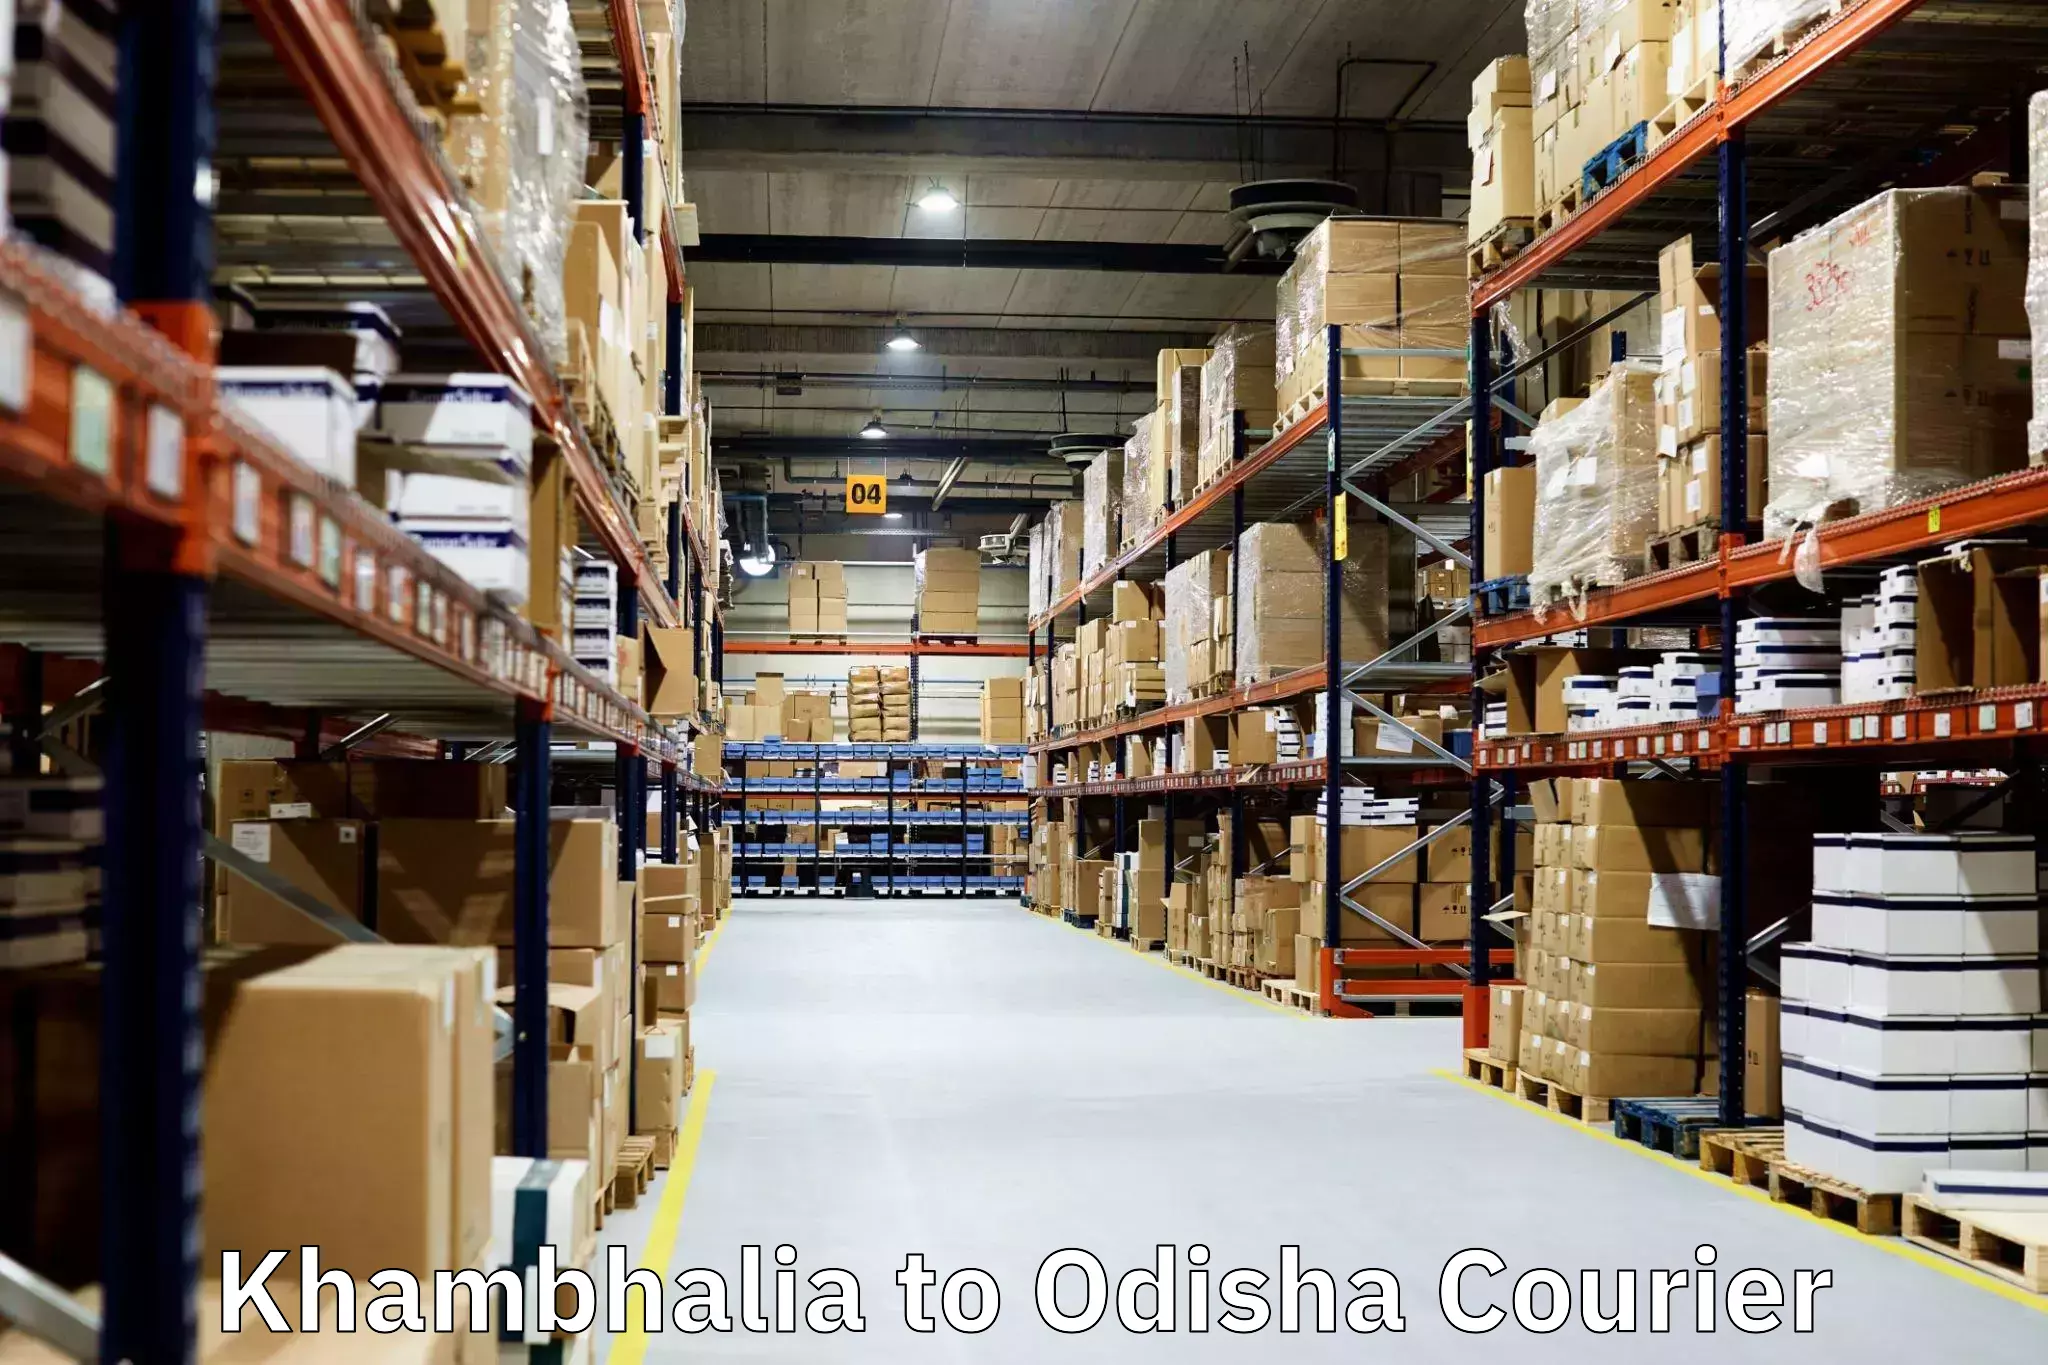 Professional packing services Khambhalia to Ukhunda